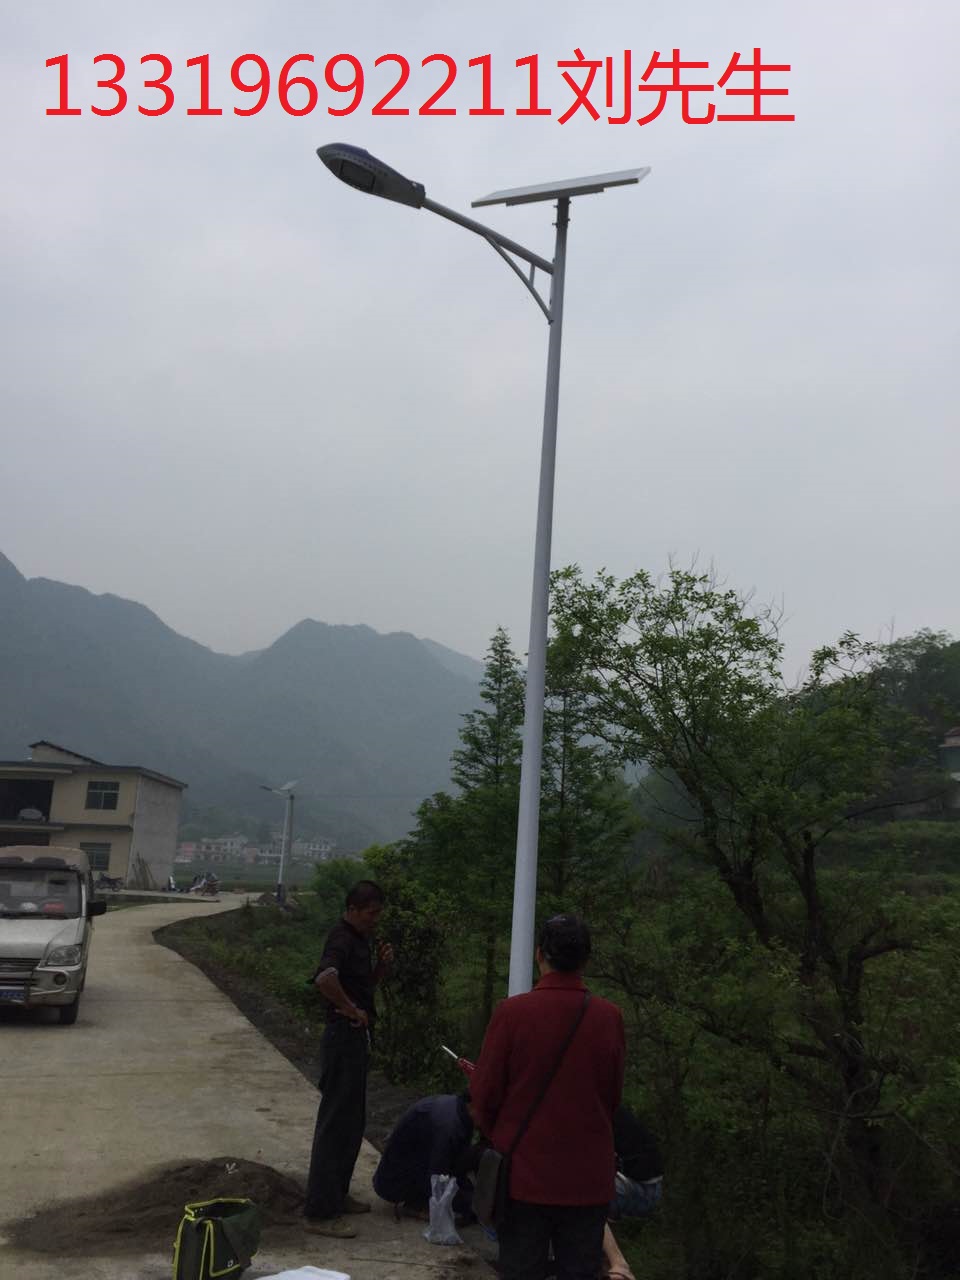 供应用于道路照明|农村照明|小区照明太阳能路灯厂家/供应邵东县太阳能